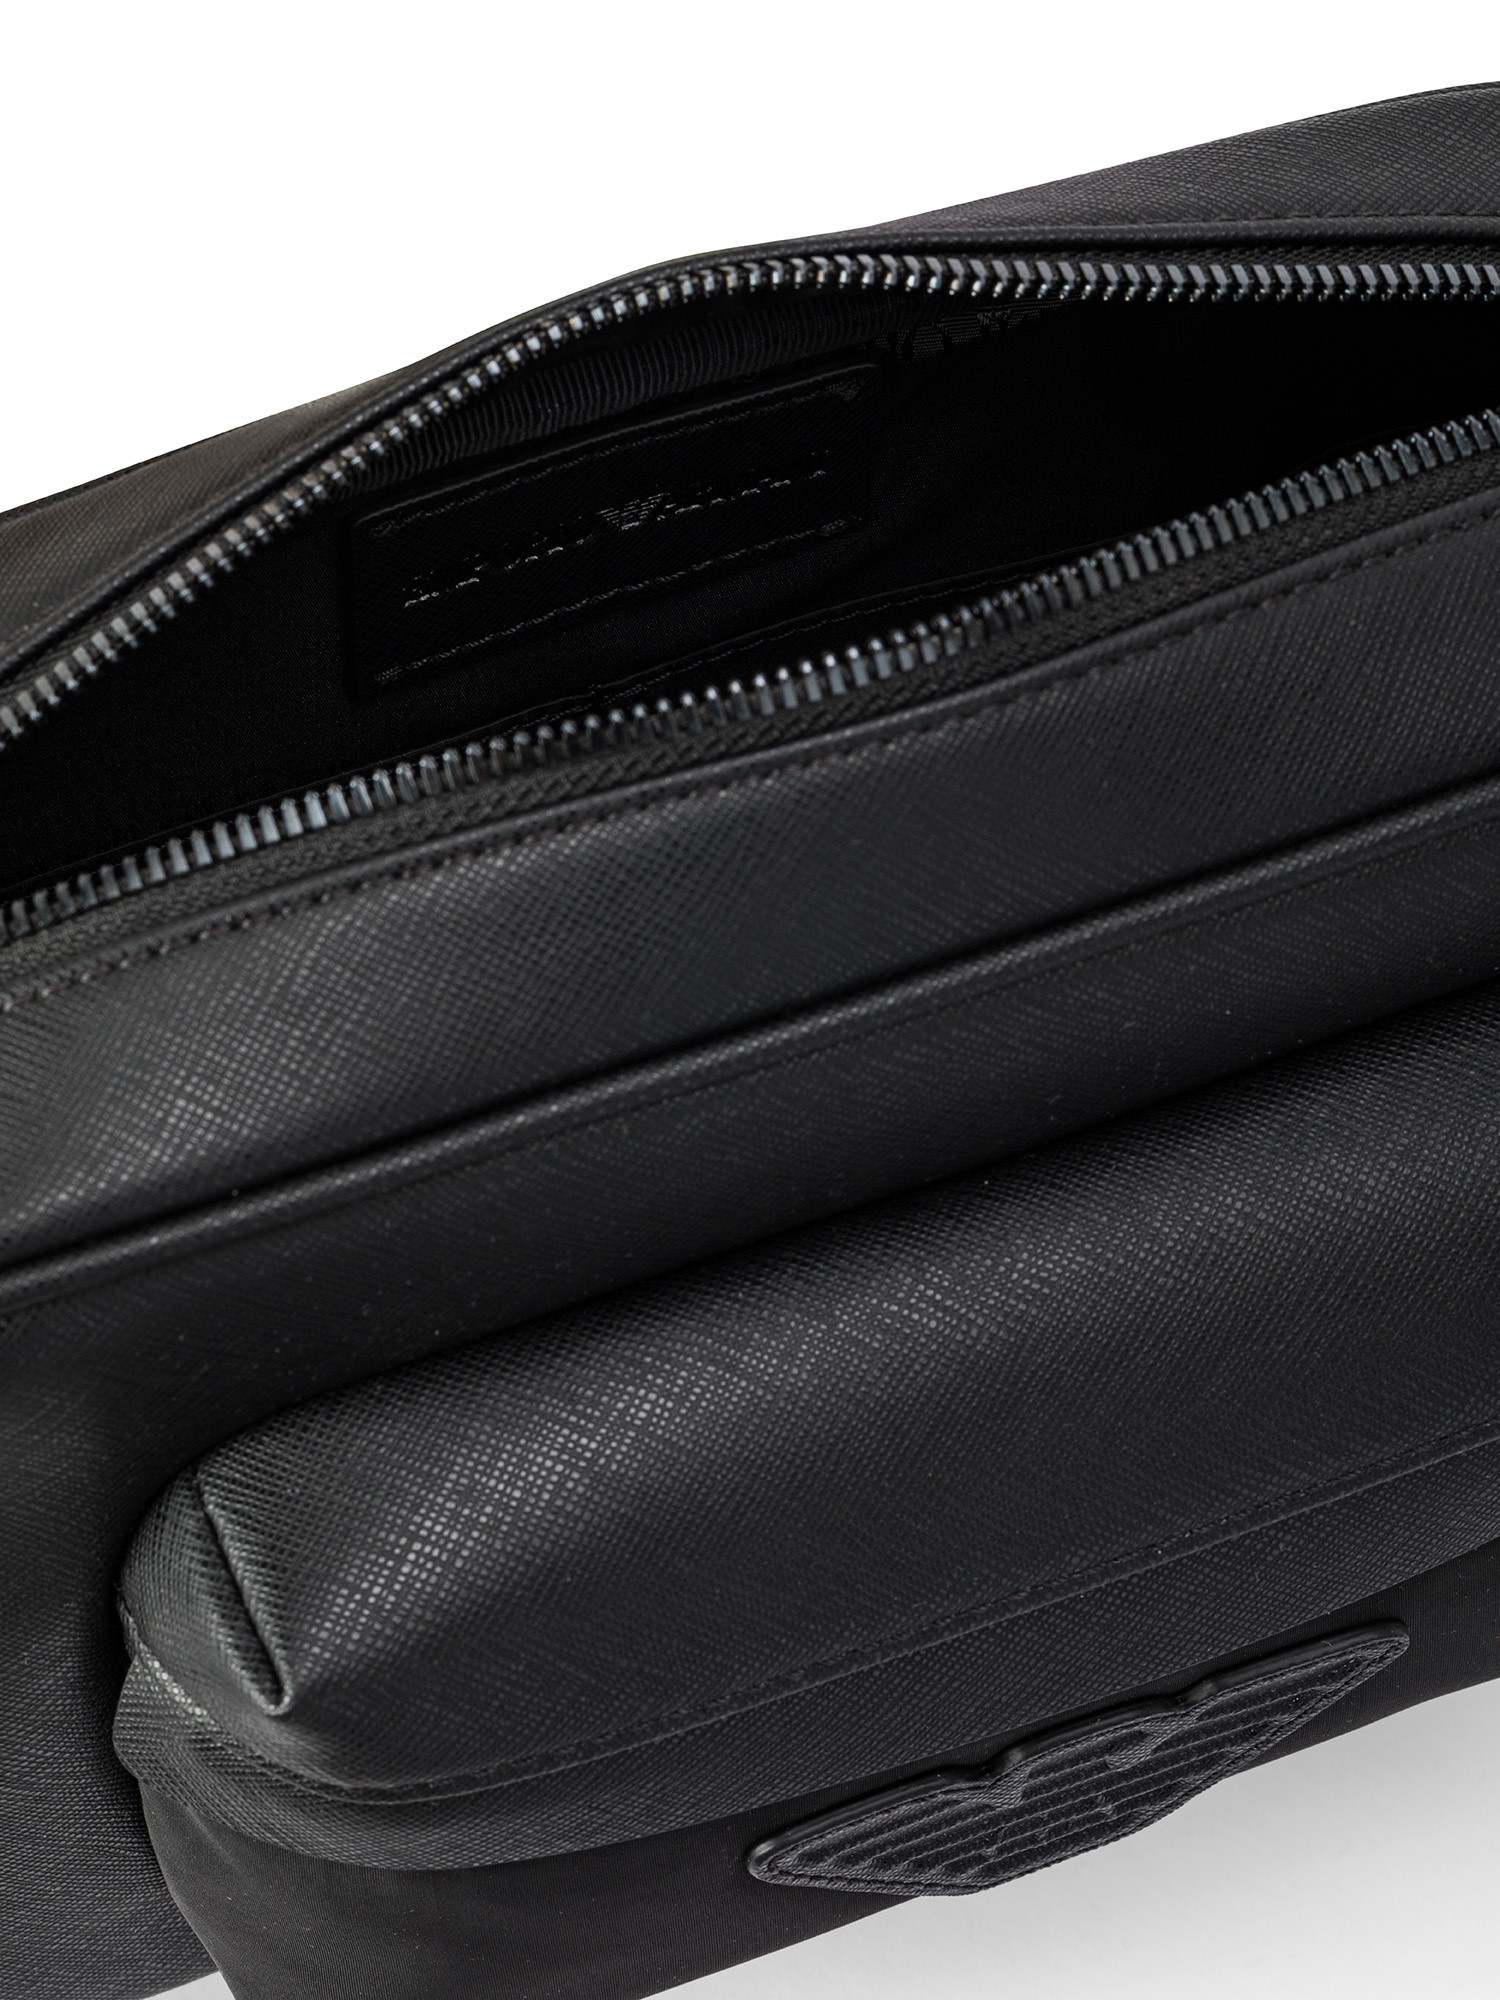 Emporio Armani - Leather shoulder bag with logo, Black, large image number 2